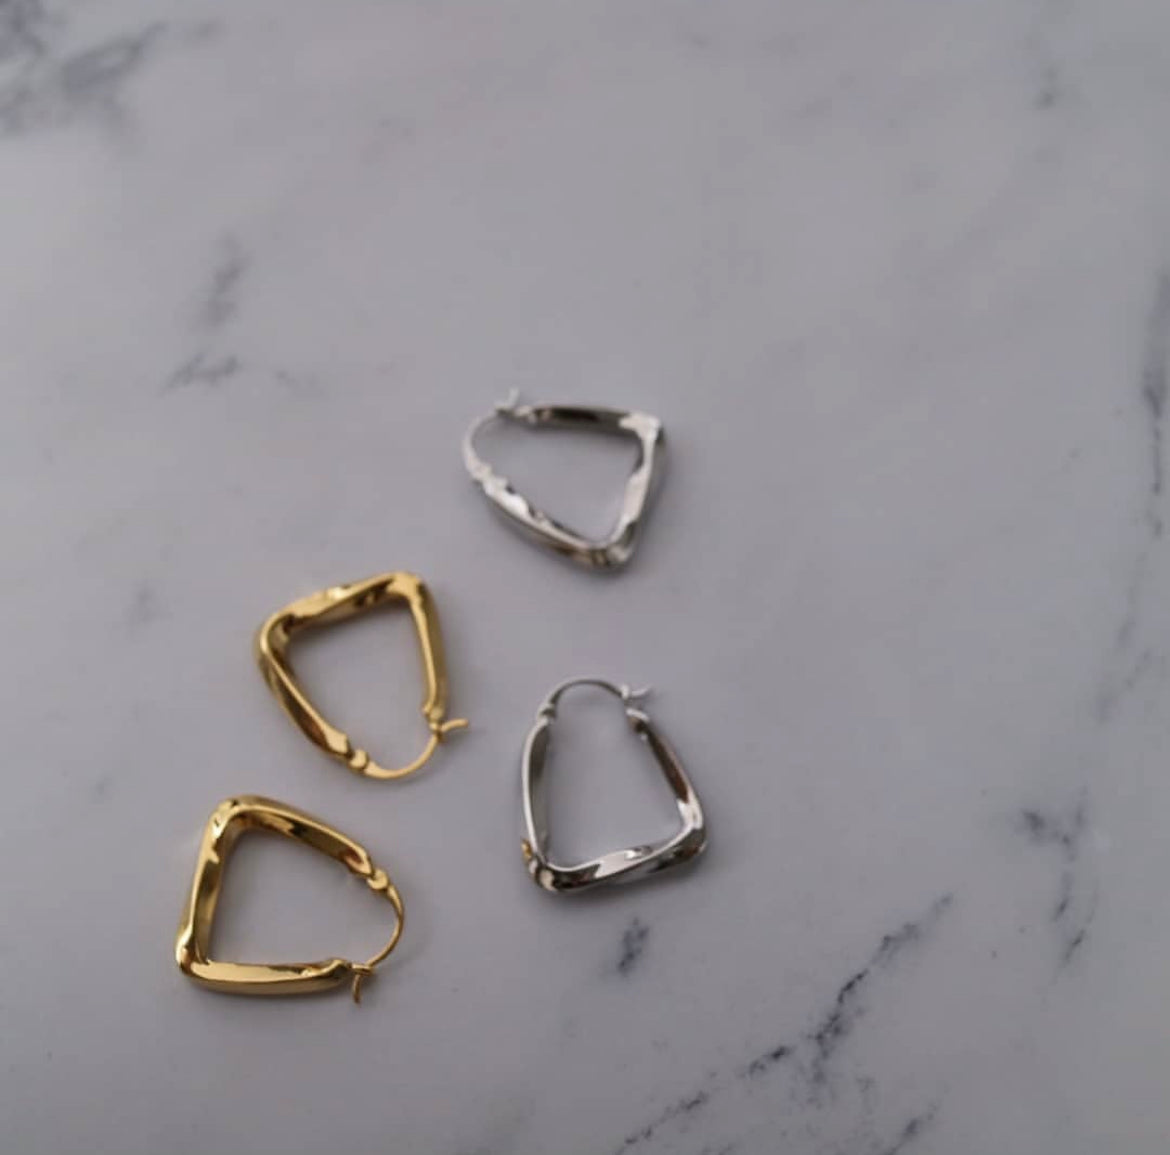 Baguette Earrings in Gold